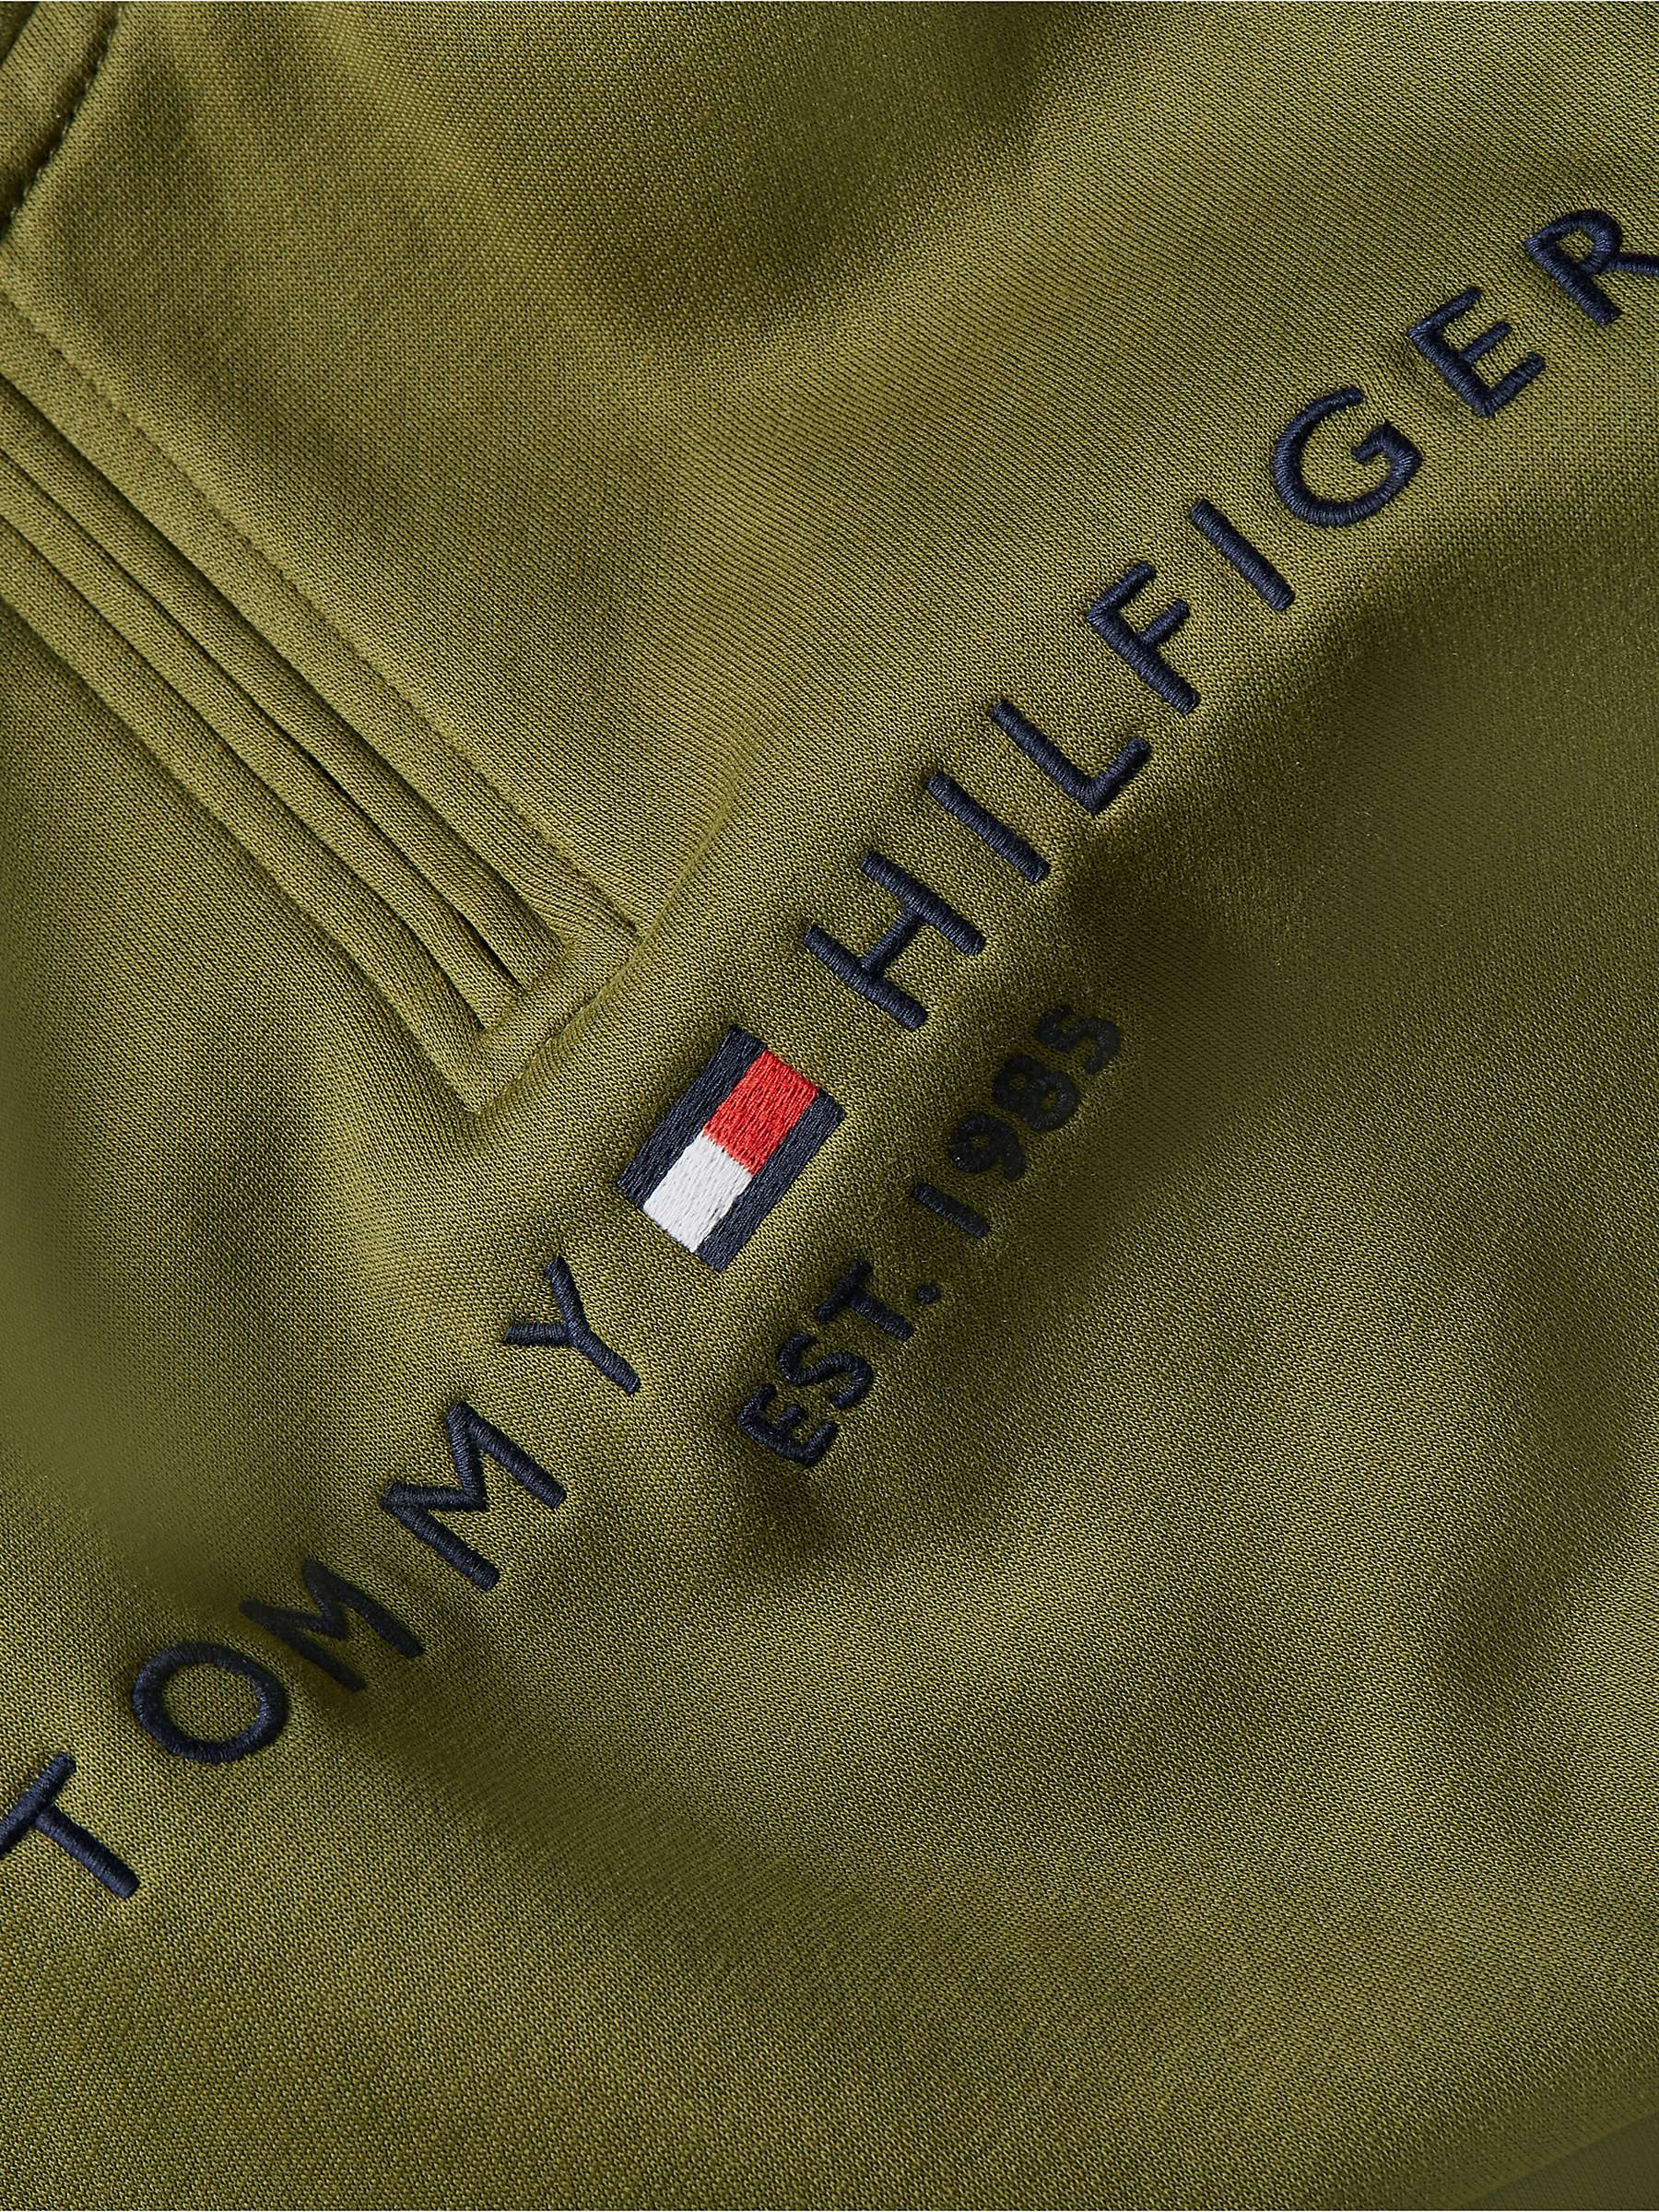 Buy Tommy Hilfiger Mock Neck Sweatshirt Online at johnlewis.com